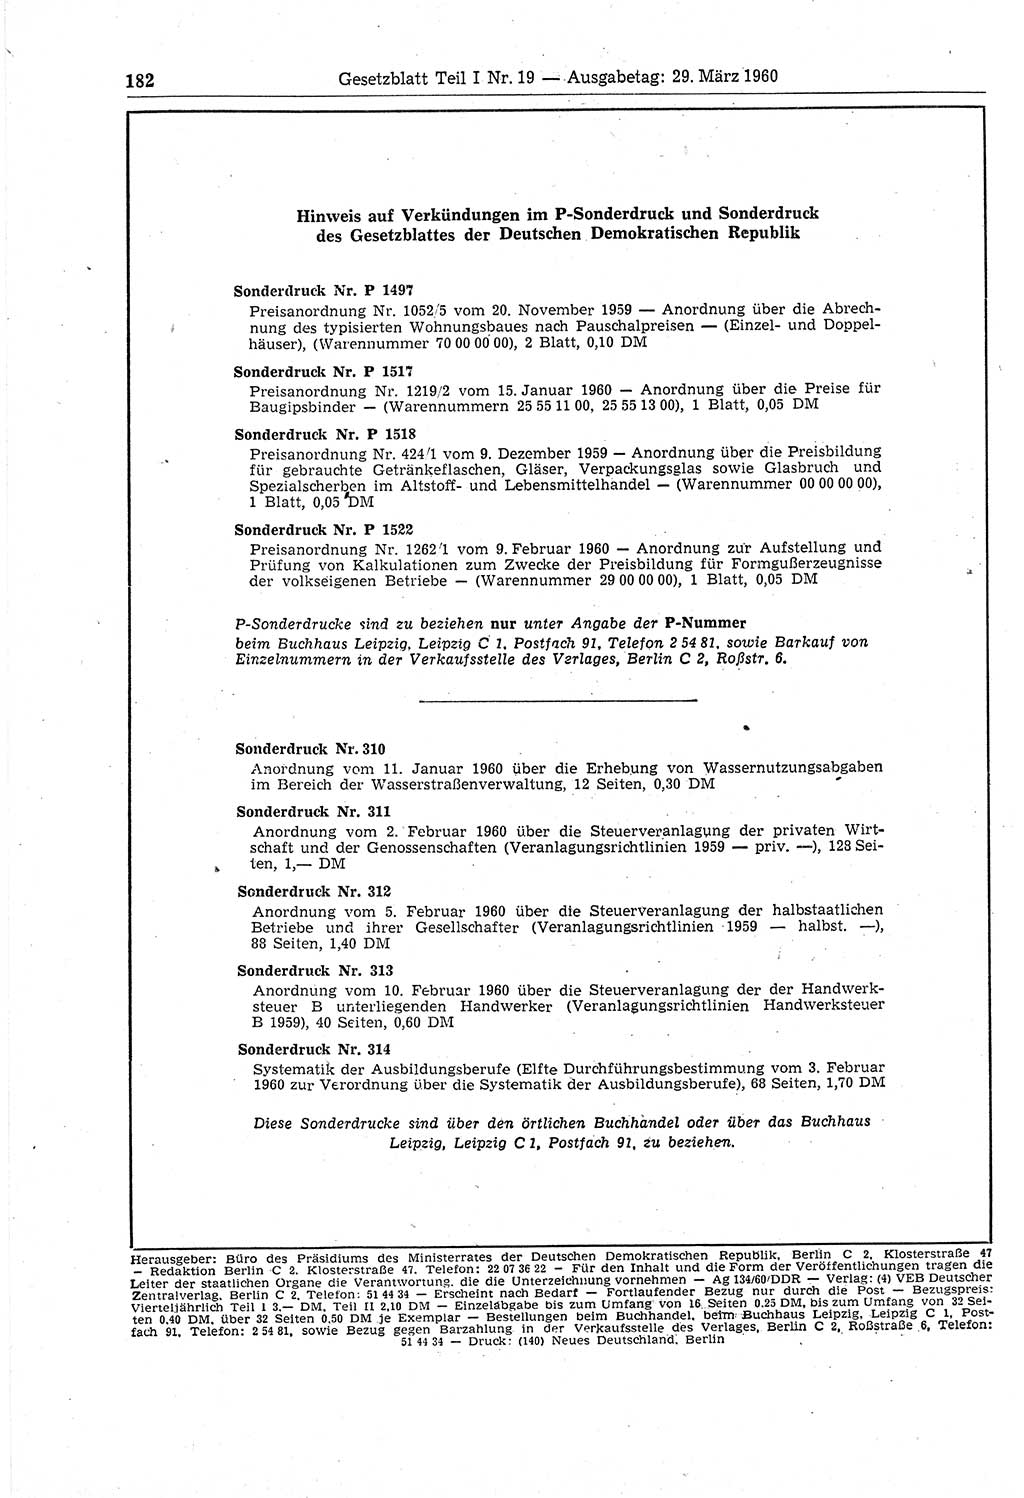 Gesetzblatt (GBl.) der Deutschen Demokratischen Republik (DDR) Teil Ⅰ 1960, Seite 182 (GBl. DDR Ⅰ 1960, S. 182)